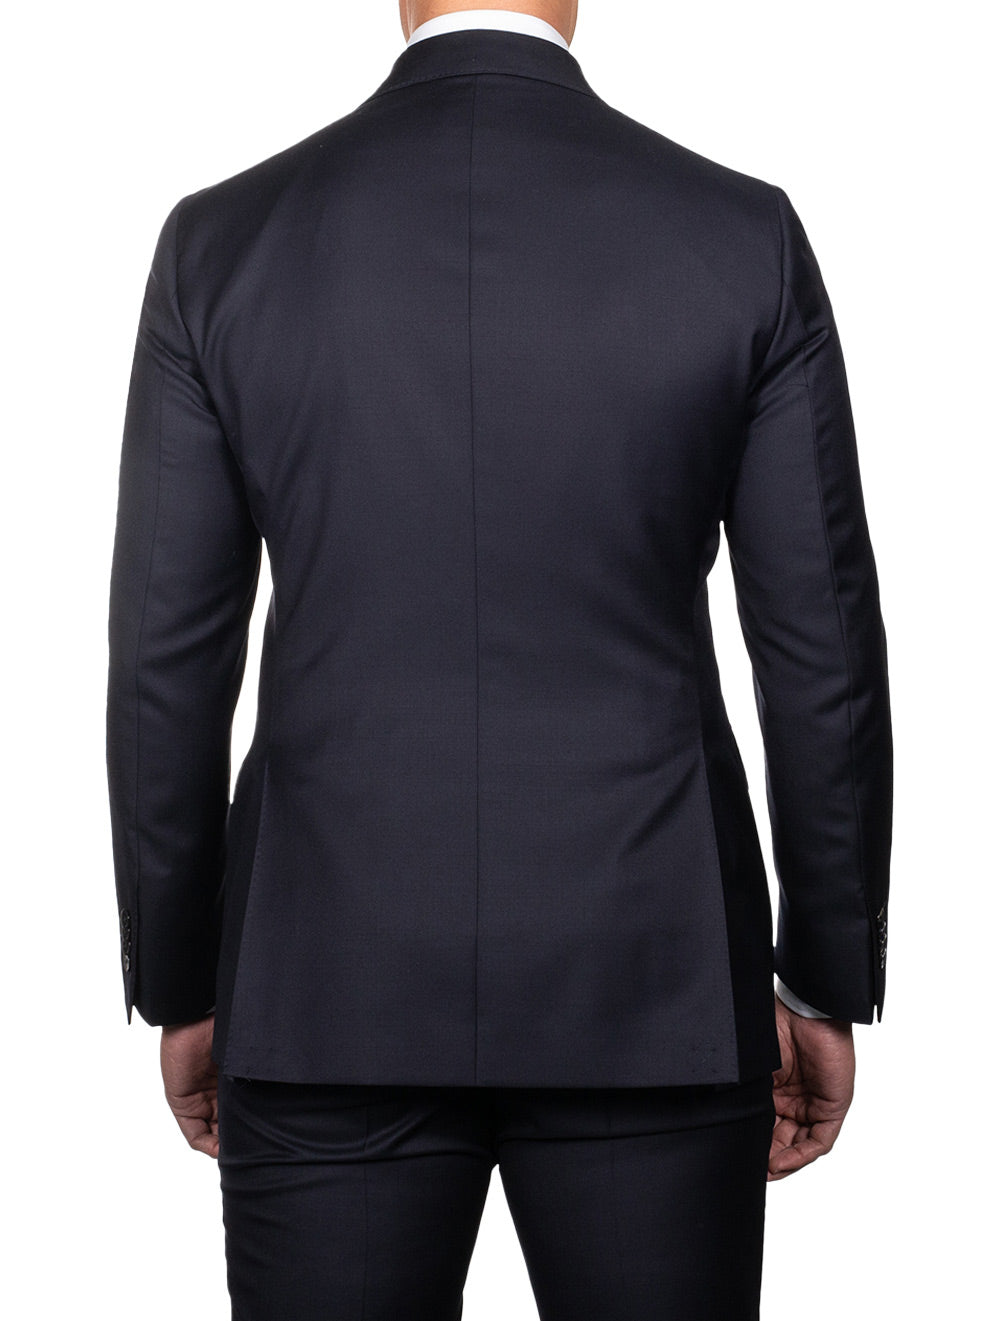 Louis Copeland Ascot Suit Navy 2 piece 2 button notch lapel soft shoulder flap pockets 3